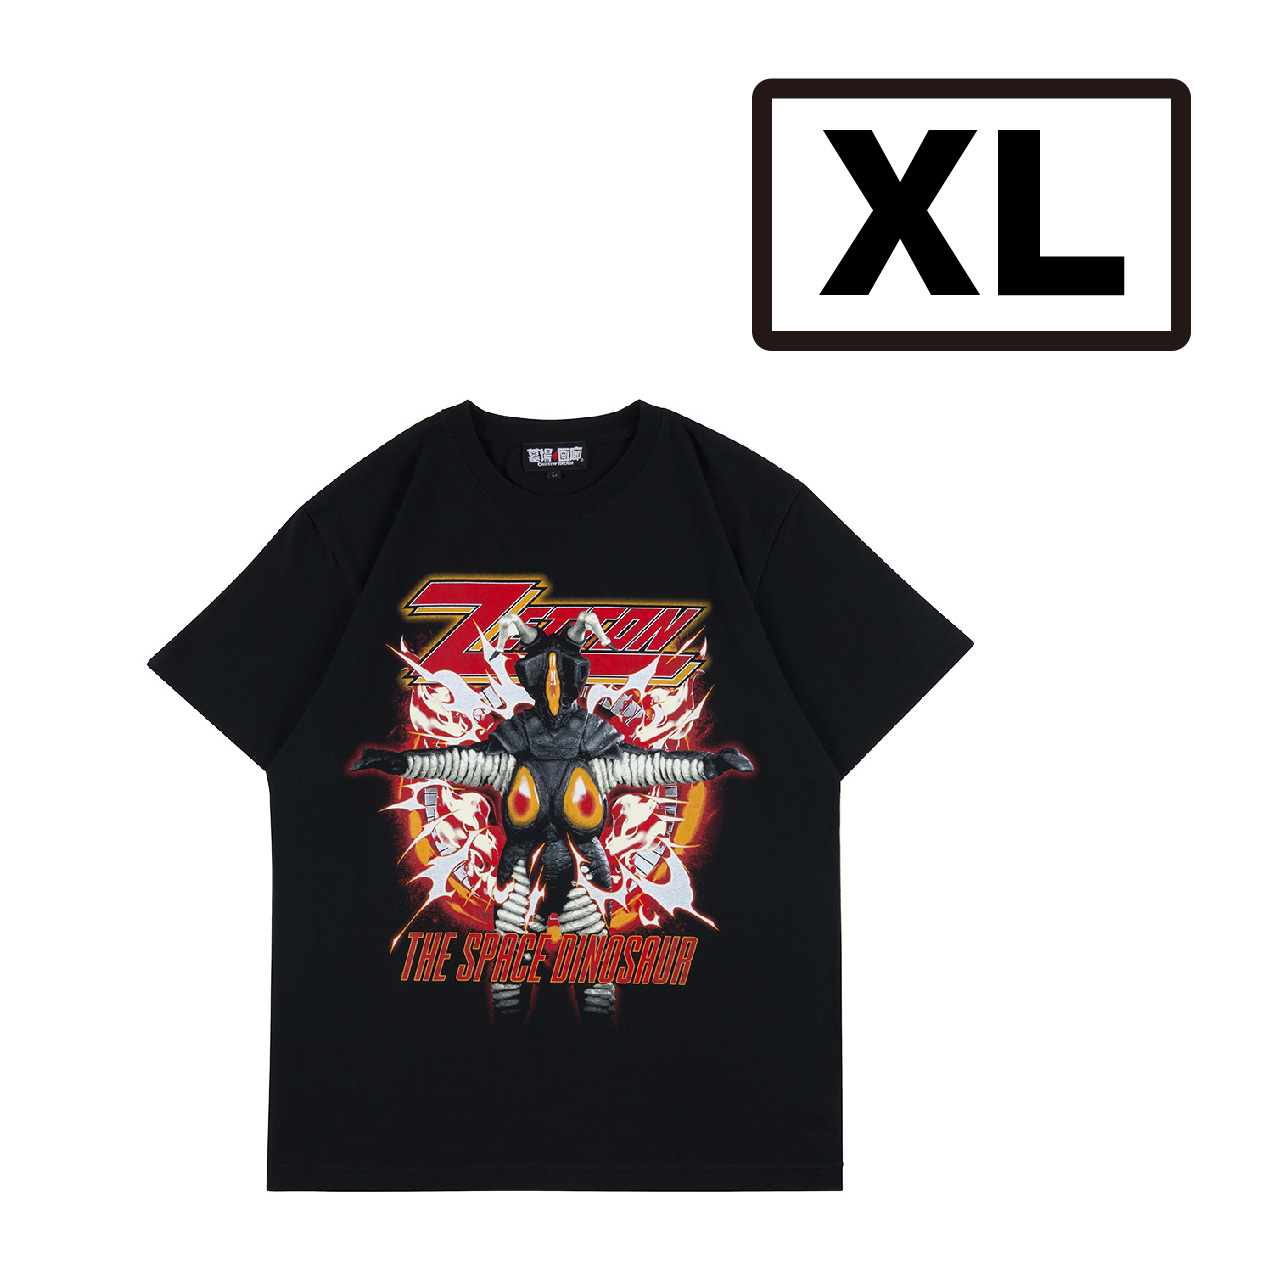 ウルトラマン/ゼットンTシャツ 墓場のメタルシャツシリーズ/XL/ブラック